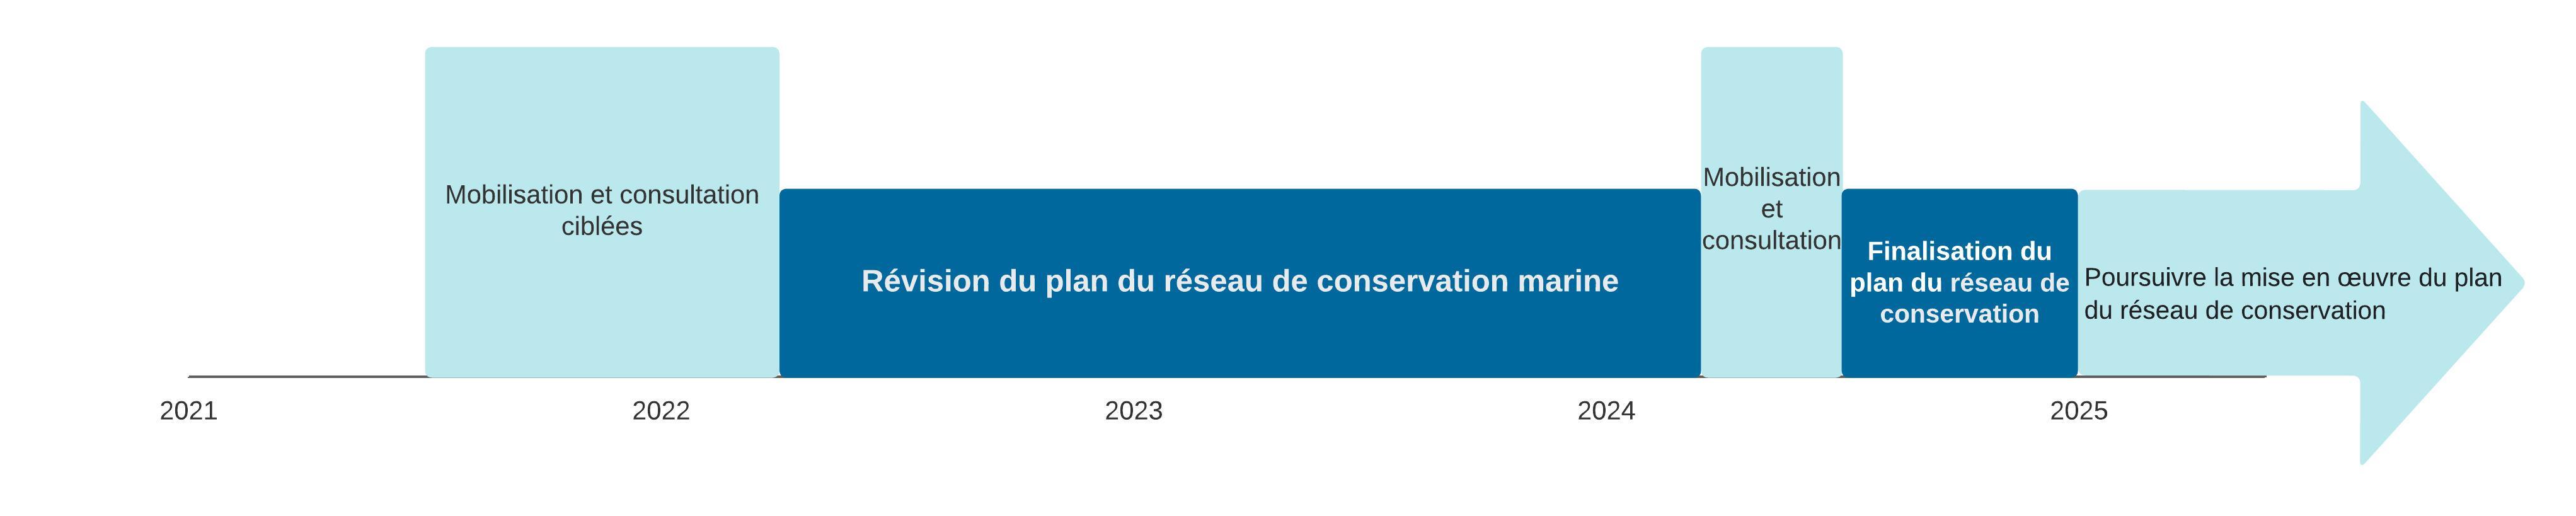 Calendrier d’élaboration du plan du réseau de conservation pour la biorégion du plateau néo-écossais et de la baie de Fundy – mis à jour en novembre 2021